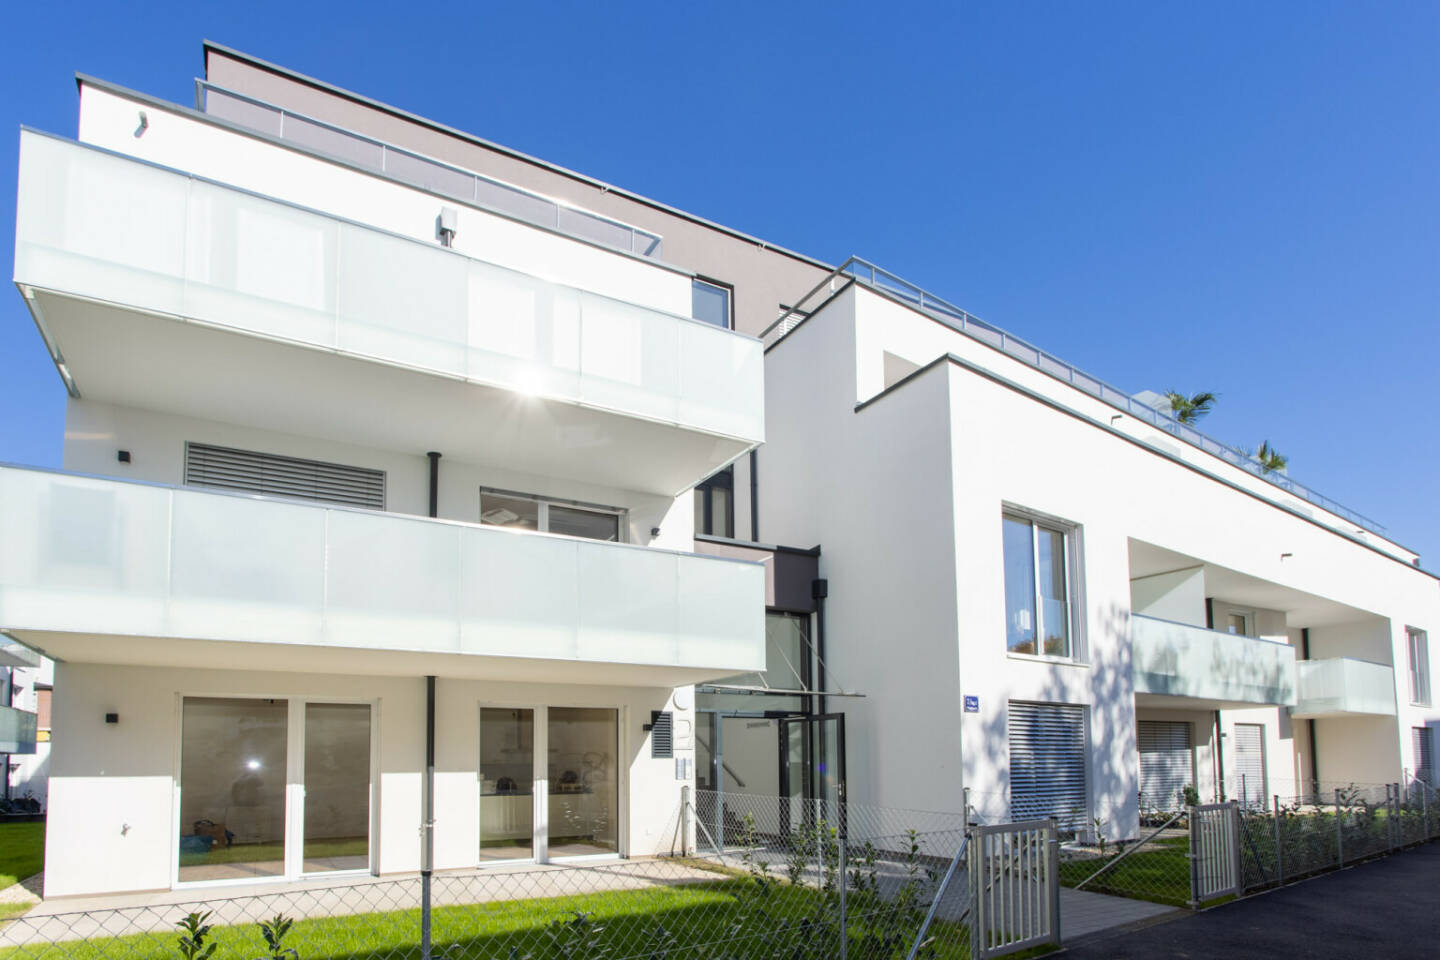 Grossmann Immobilien GmbH: Eine starke Kombi: Grossmann Immobilien und Wüstenrot kooperieren bei neuem Wohnprojekt, die Wohnbauten in der Weglgasse 7 in Schwechat wurden nach modernen Maßstäben geplant. Fotocredit: Grossmann Immobilien